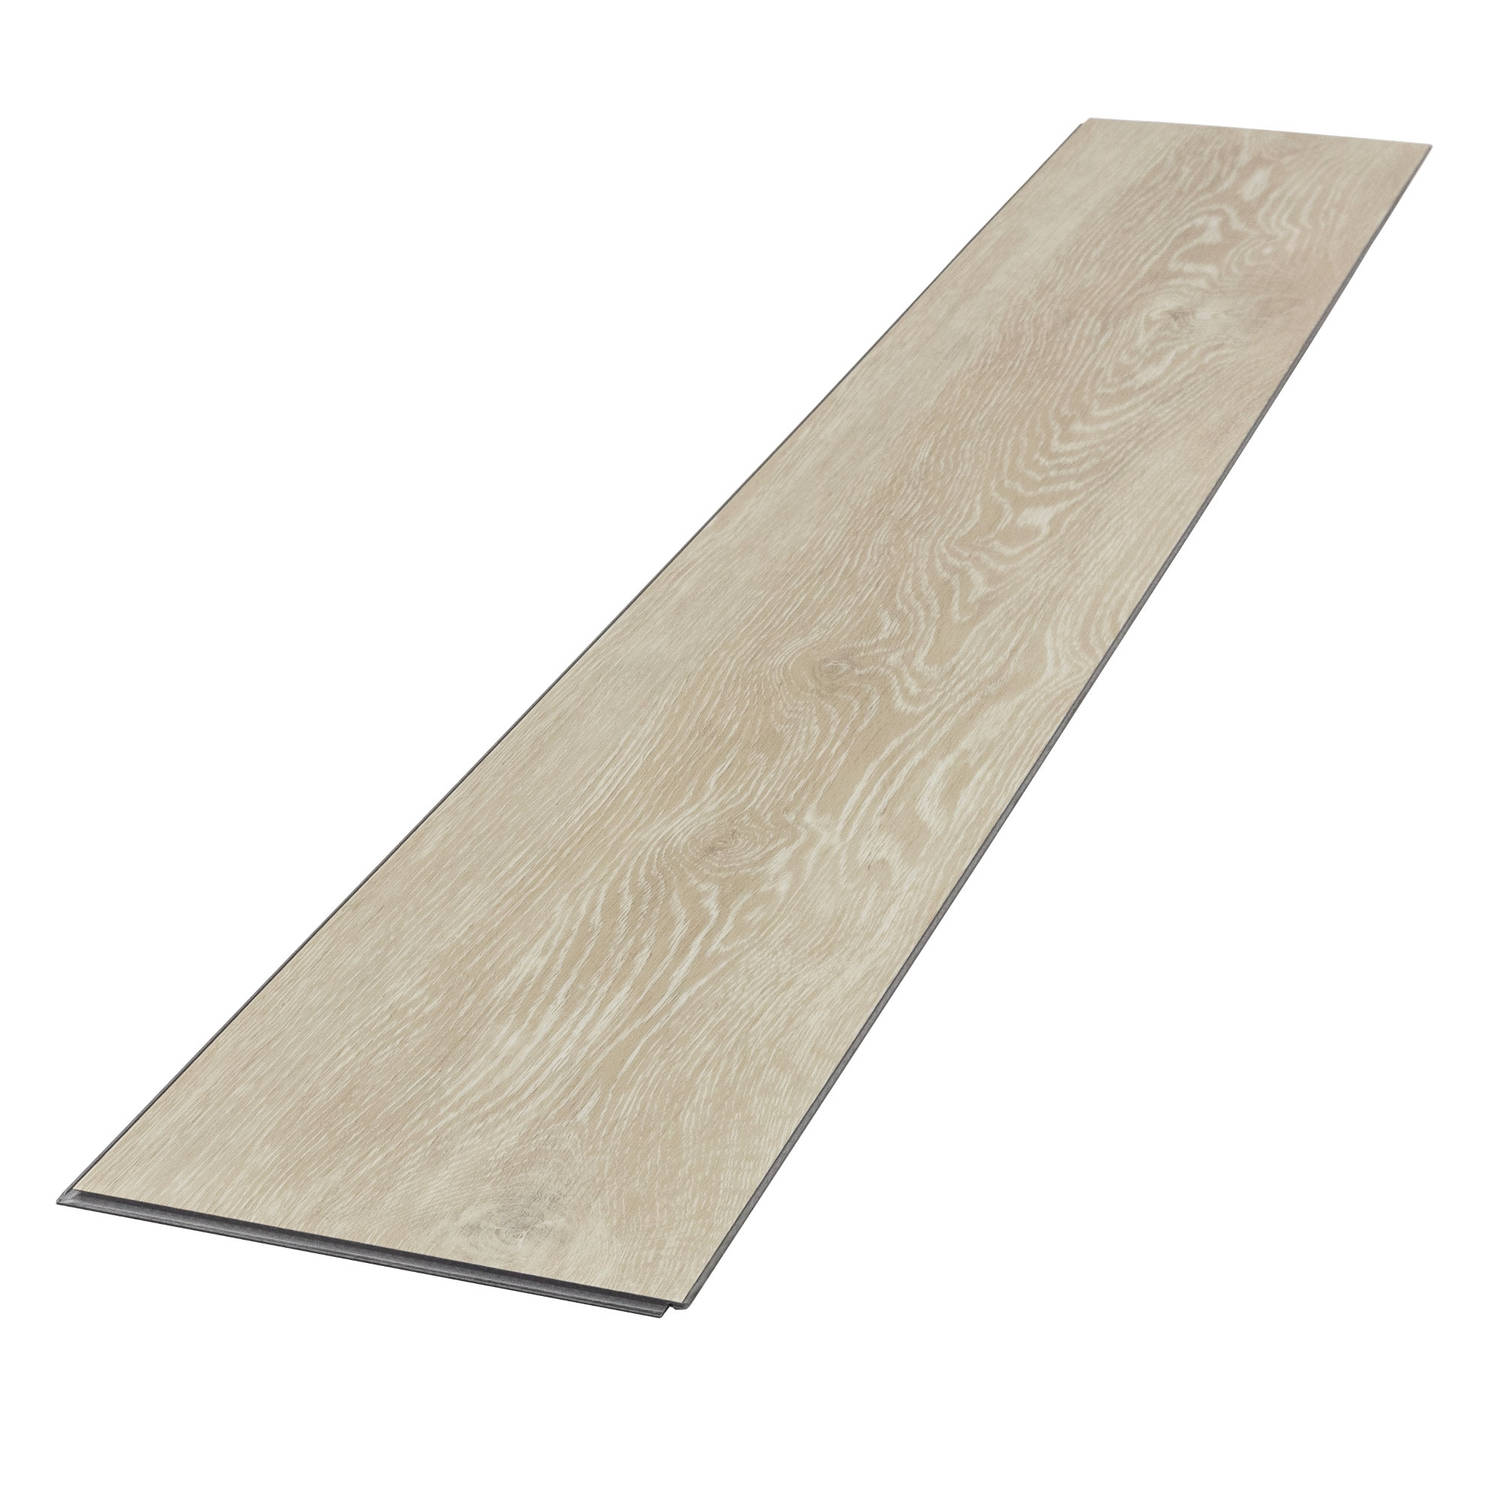 ML-Design Deluxe PVC vloeren, Click Vinyl planken, vinyl vloeren, 122cm x 18cm x 4,2mm, dikte 4,2mm, 3,08m²/14 planken, Afterglow Eik, Bruin, houtlook, antislip, waterbestendig, ee